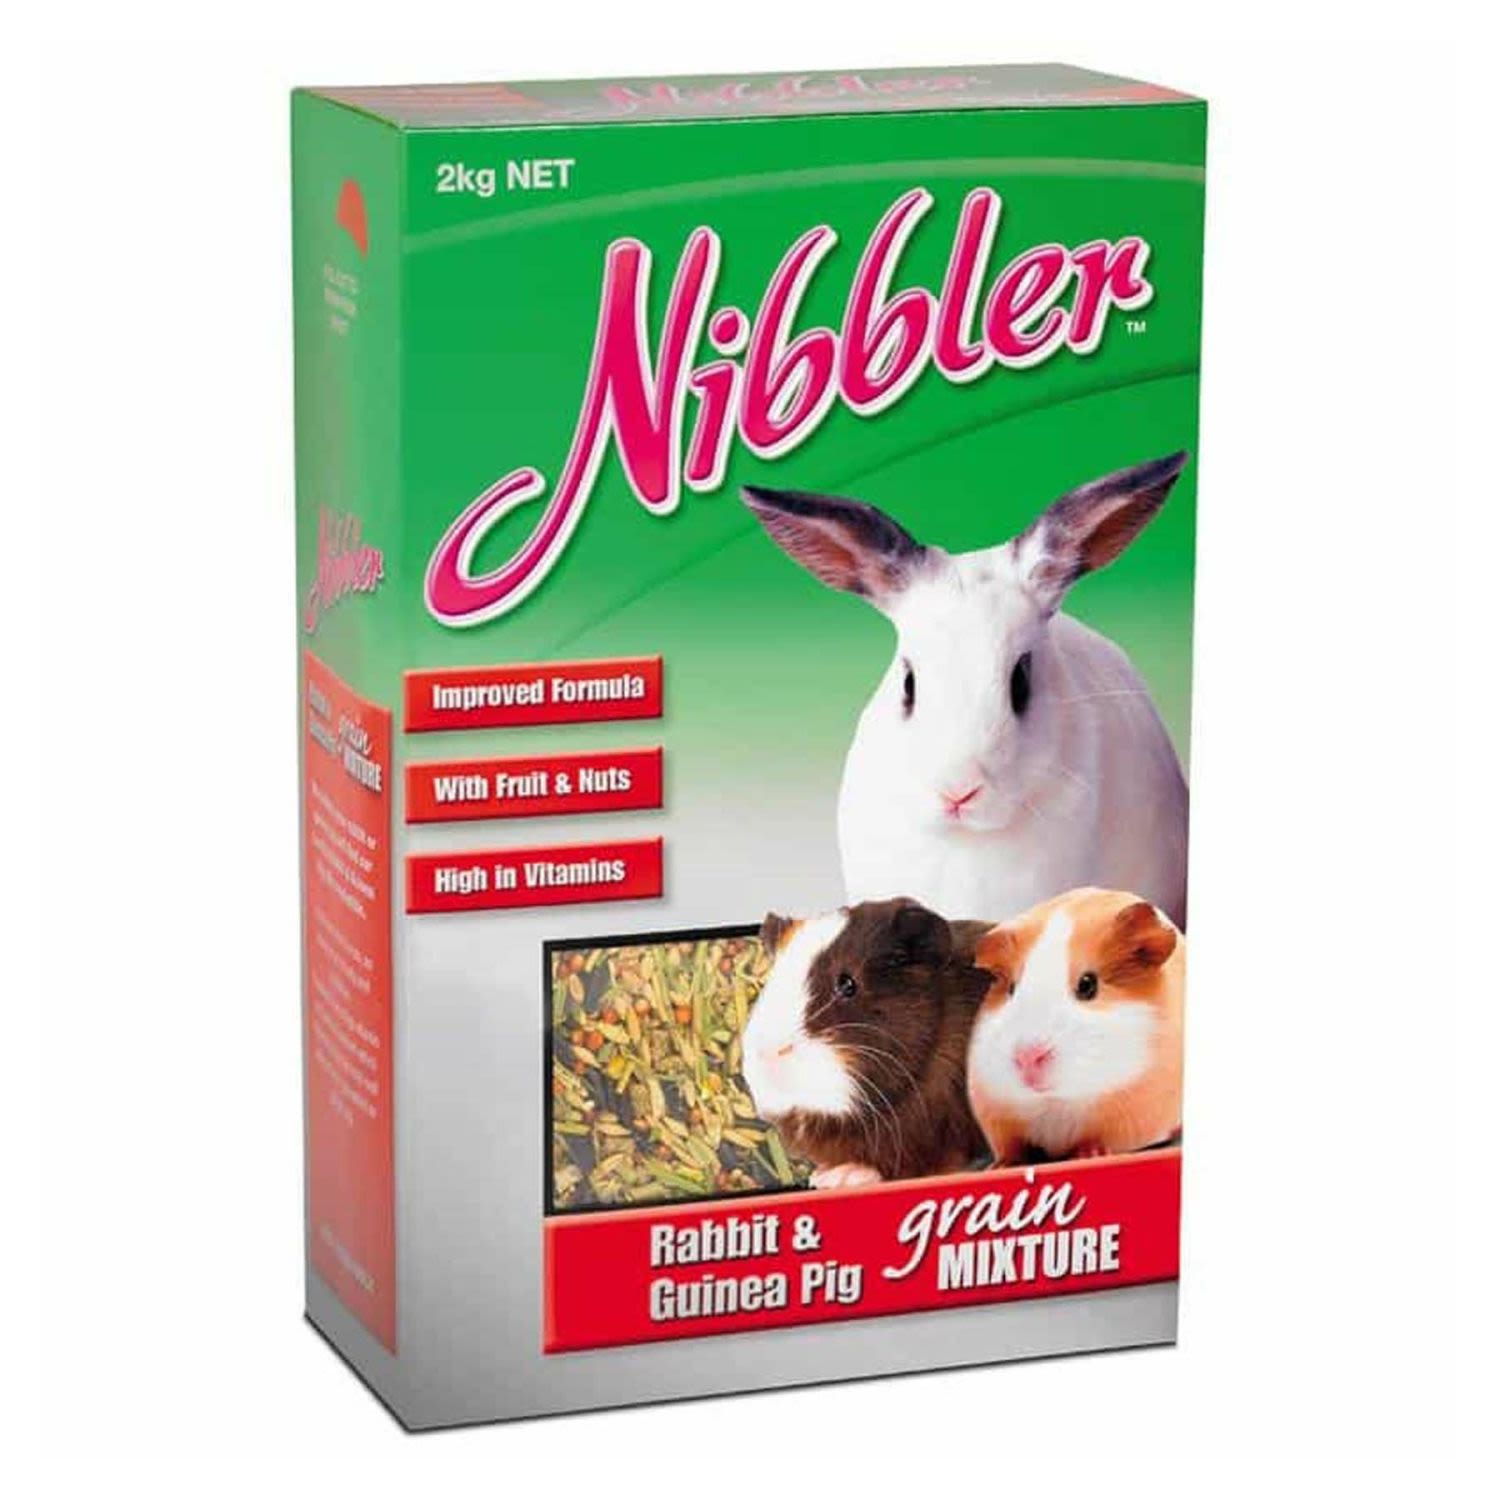 Nibbler Rabbit & Guinea Pig Mix, 2 Kilogram